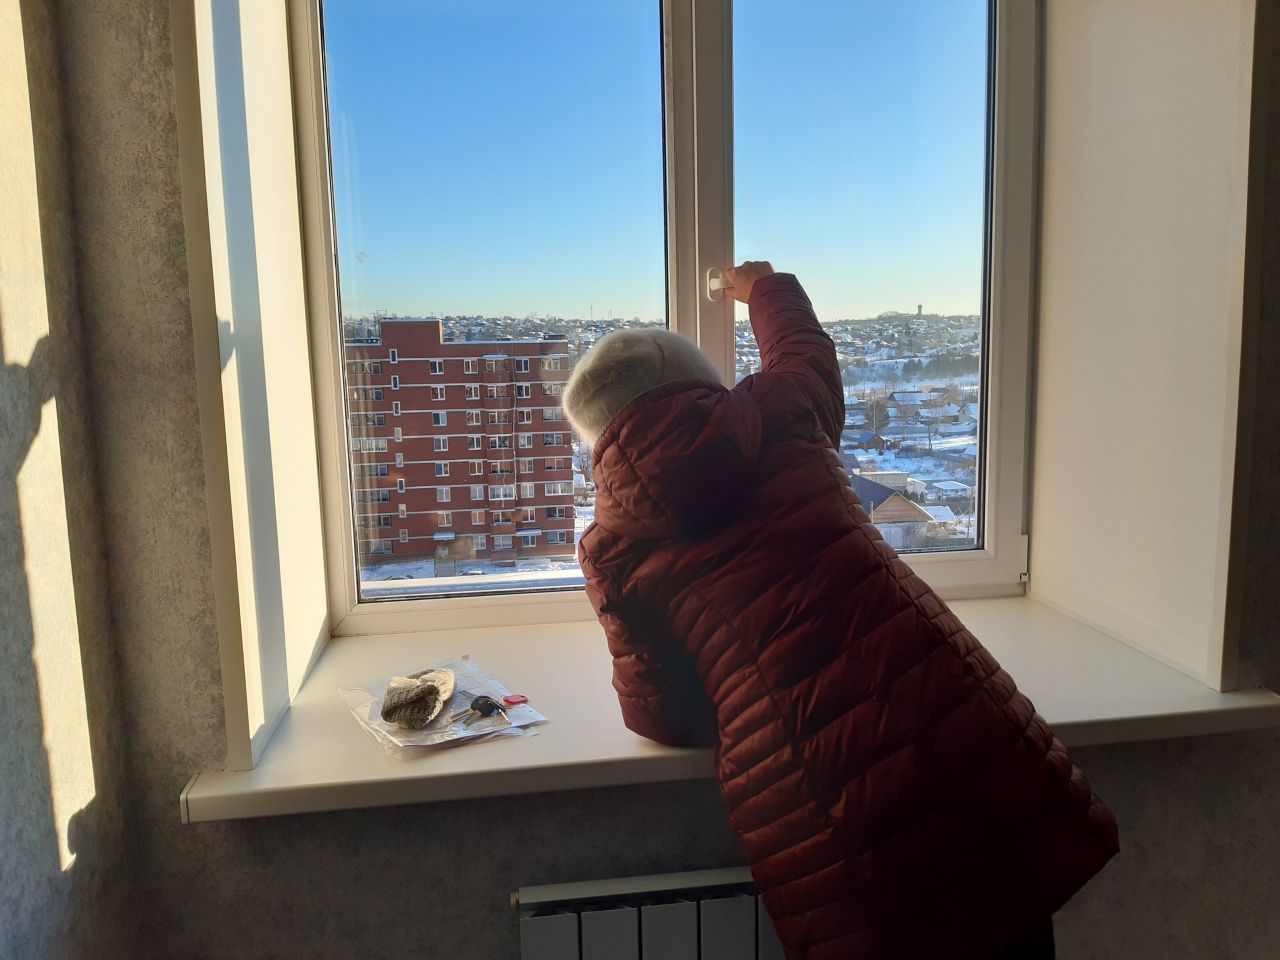 В Краснотурьинске переселенцам из аварийного жилья вручили ключи от новых квартир